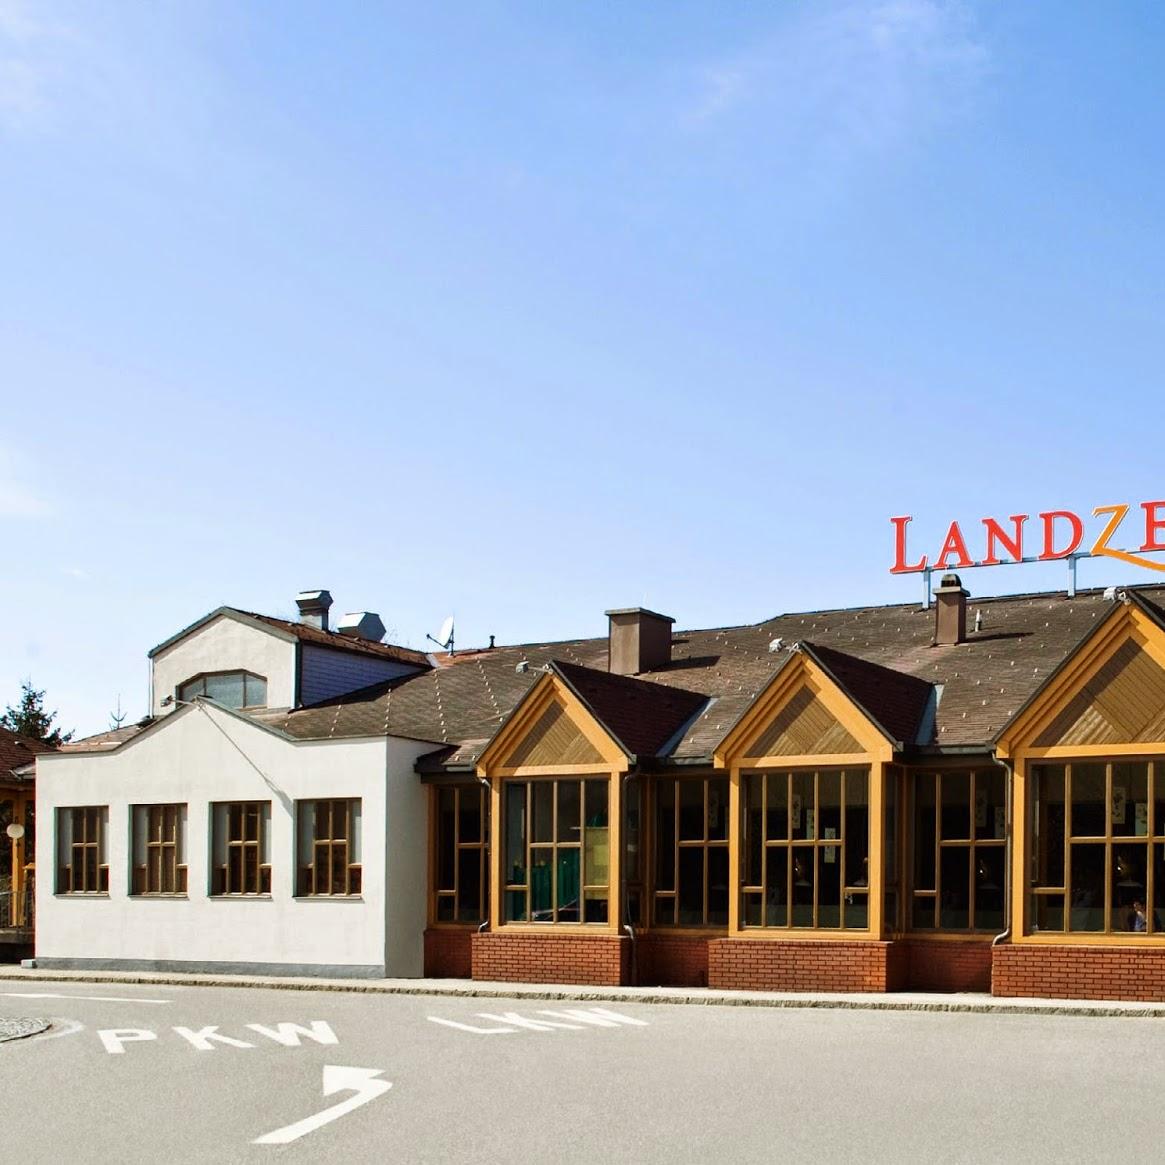 Restaurant "Landzeit" in Kemmelbach